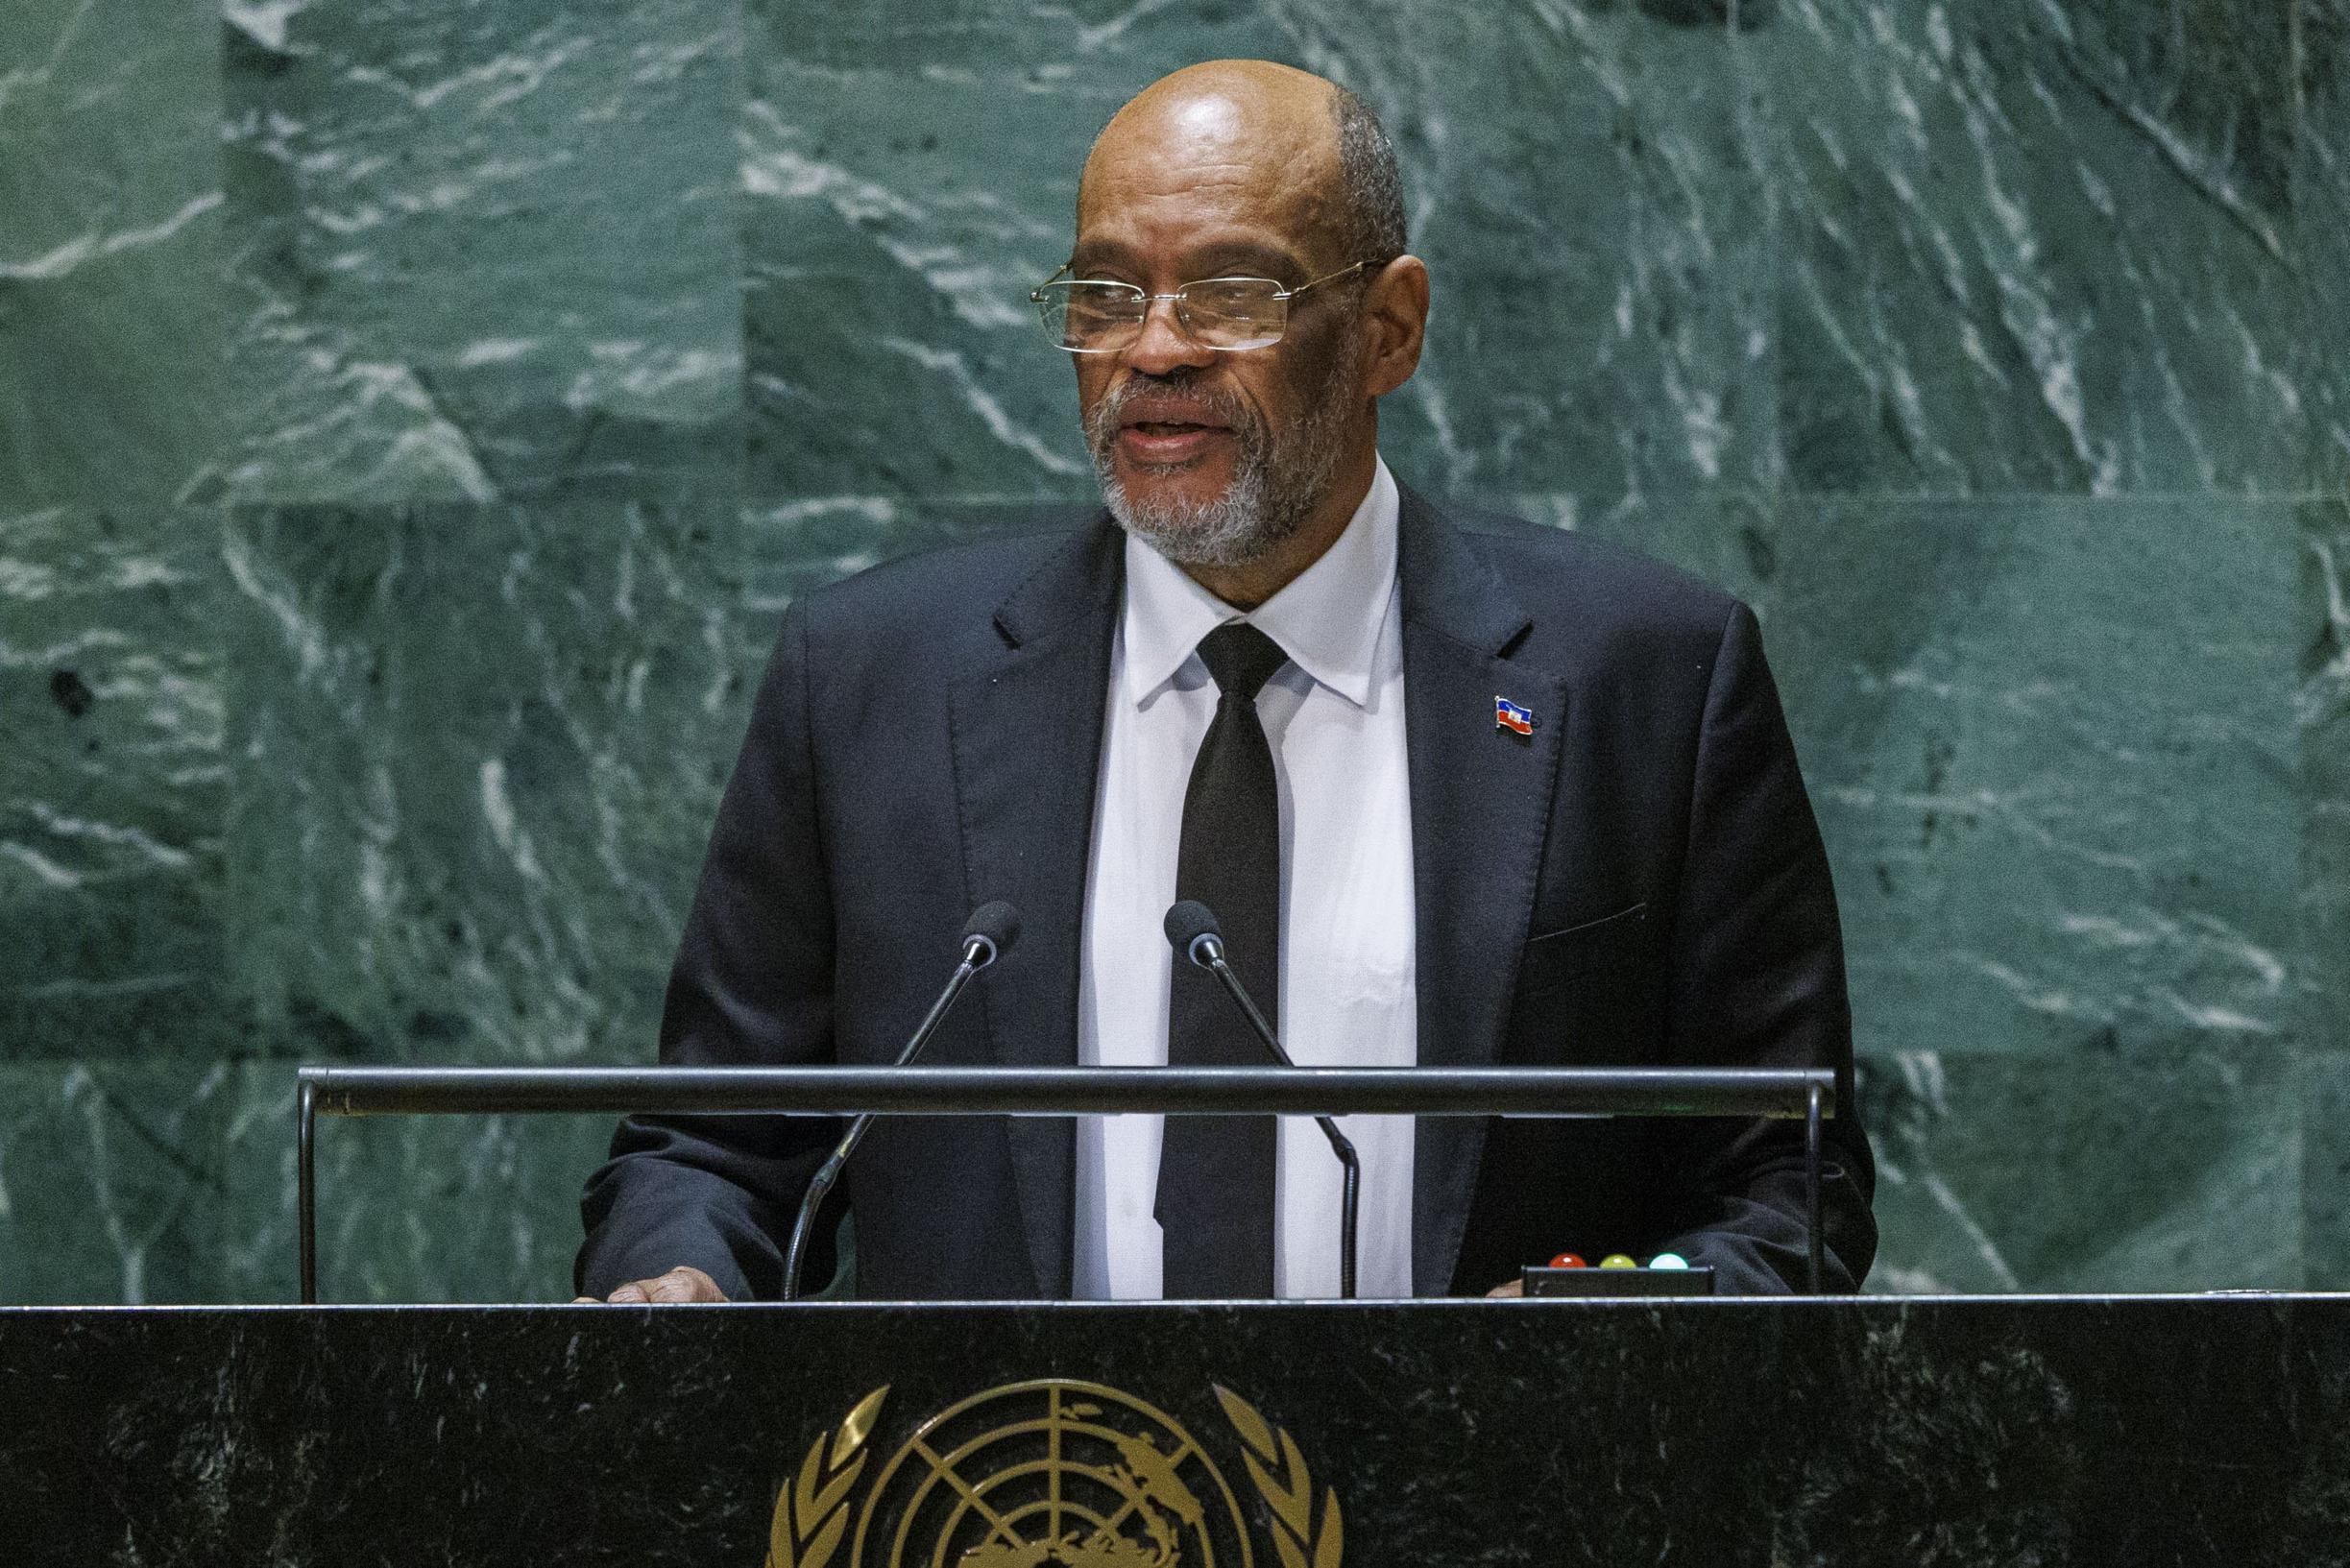 Haitian Prime Minister Ariel Henry steps down